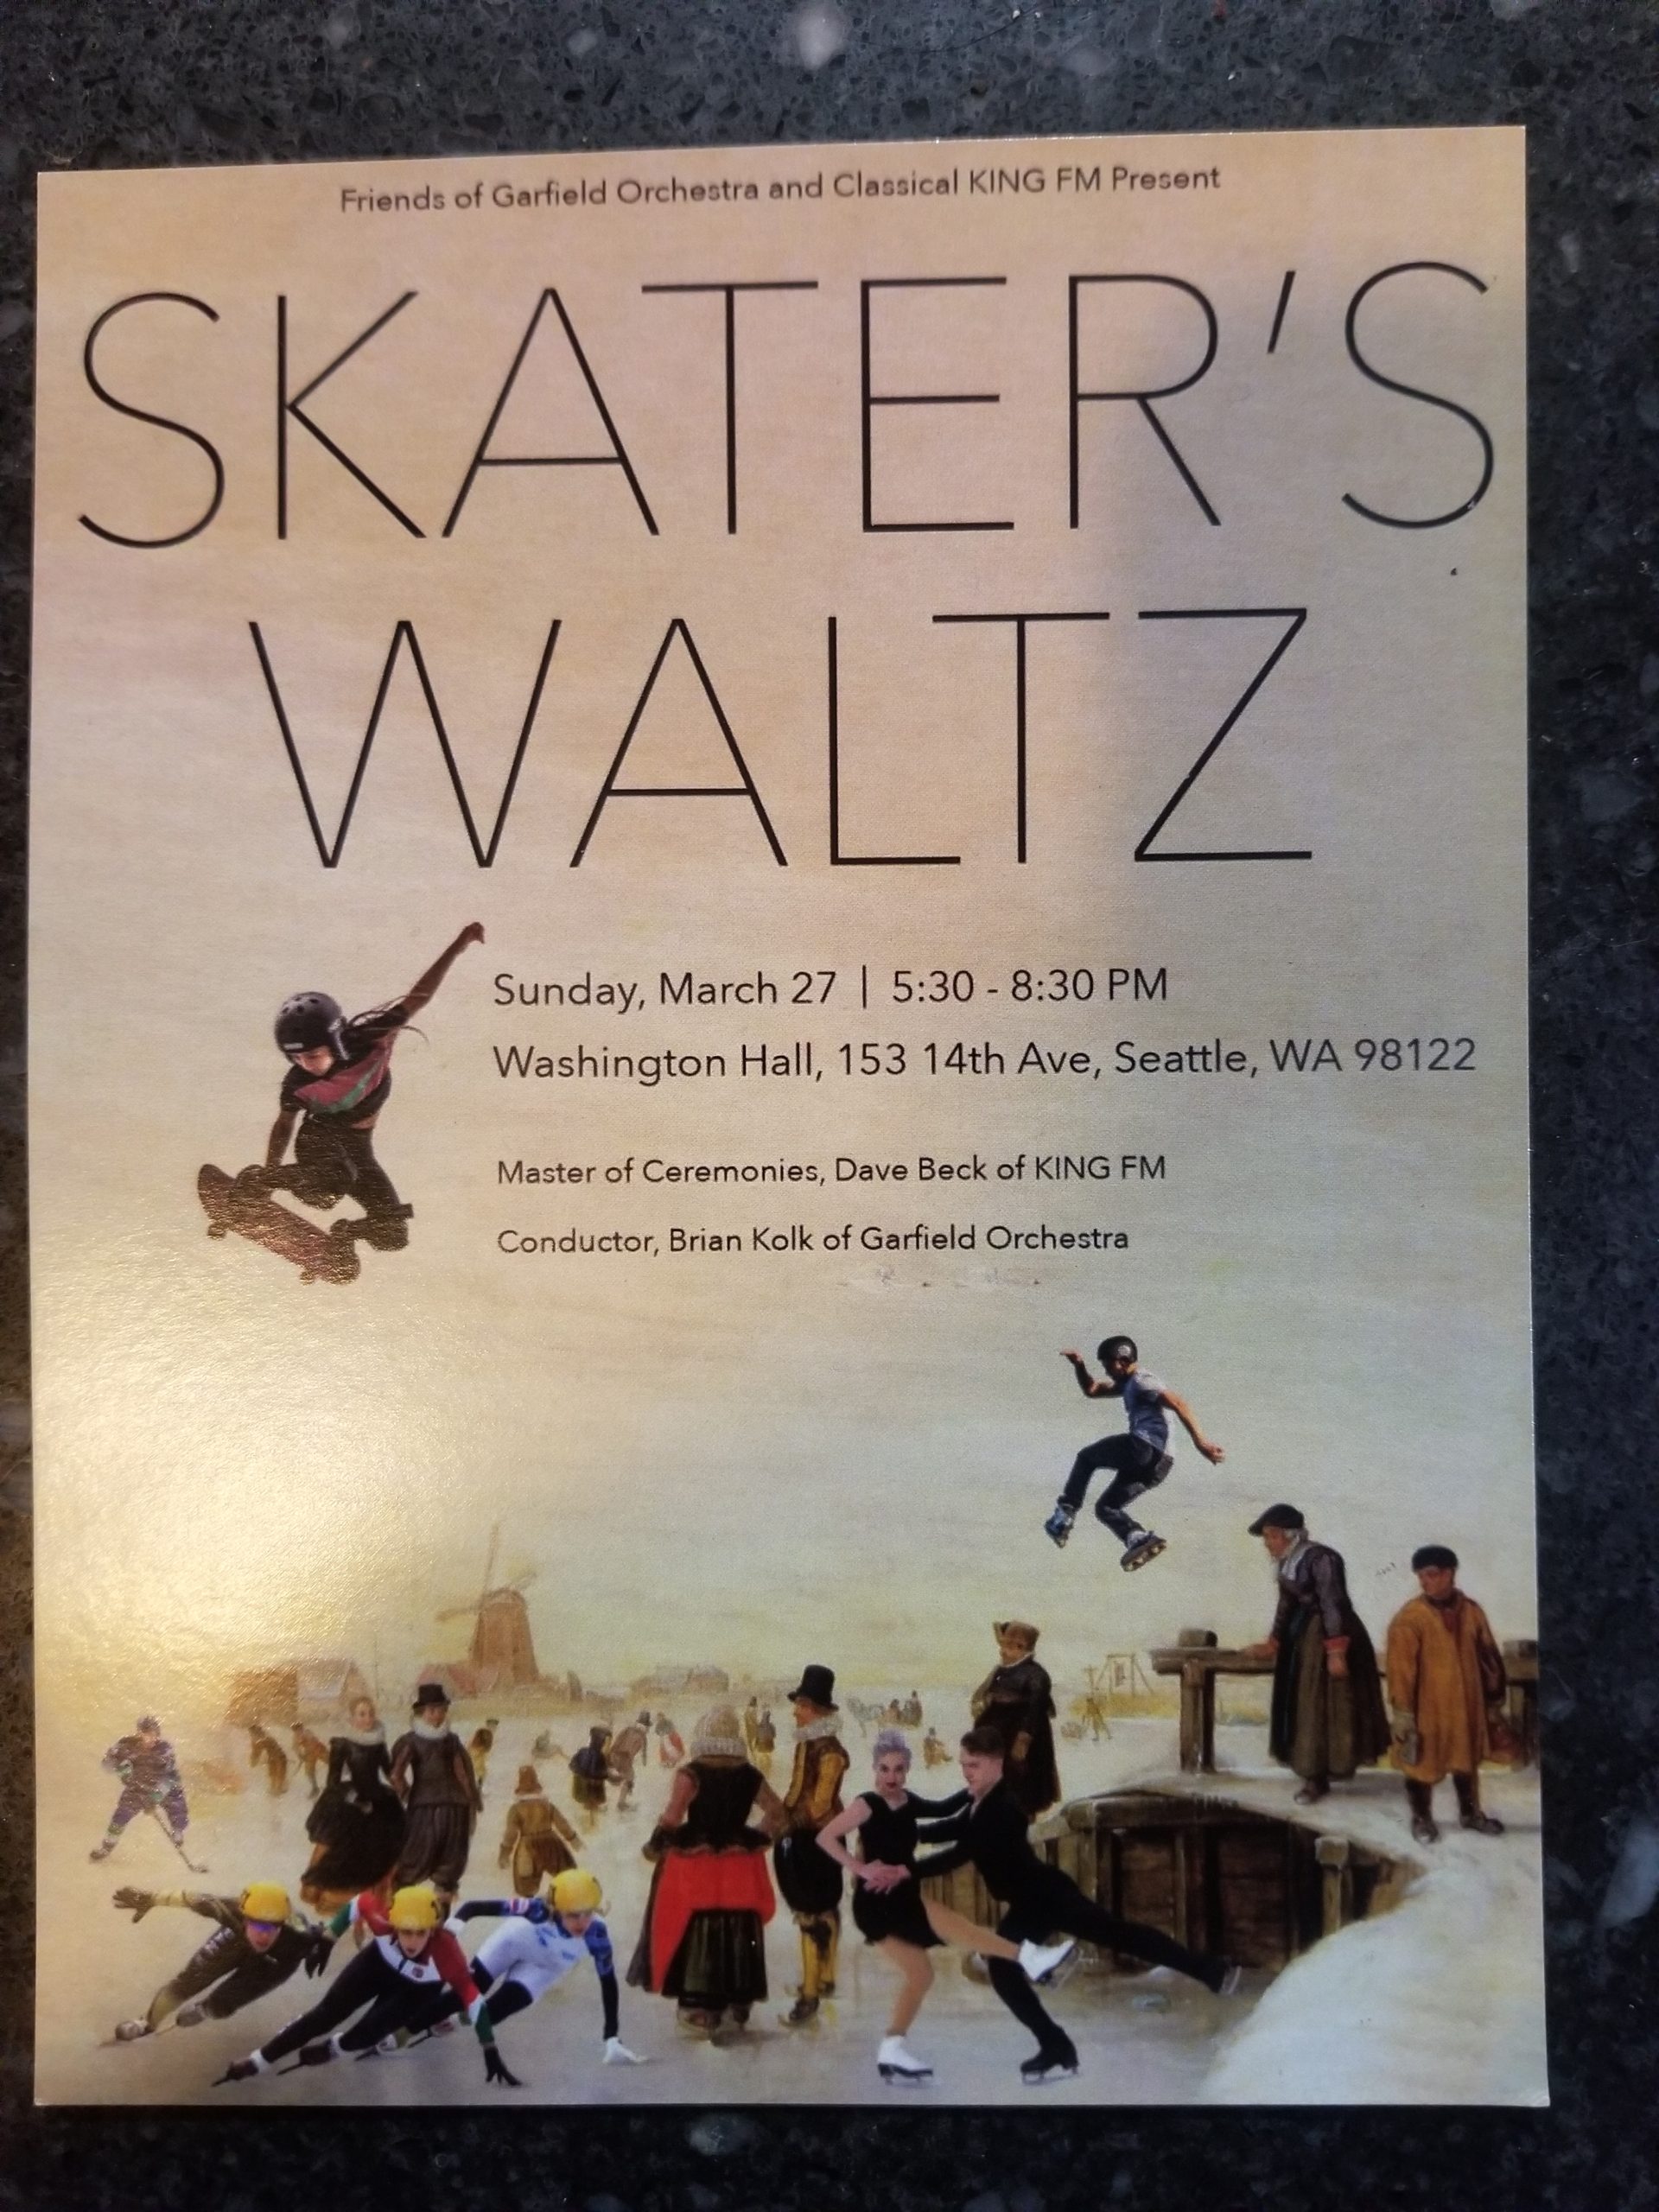 Skater's Waltz